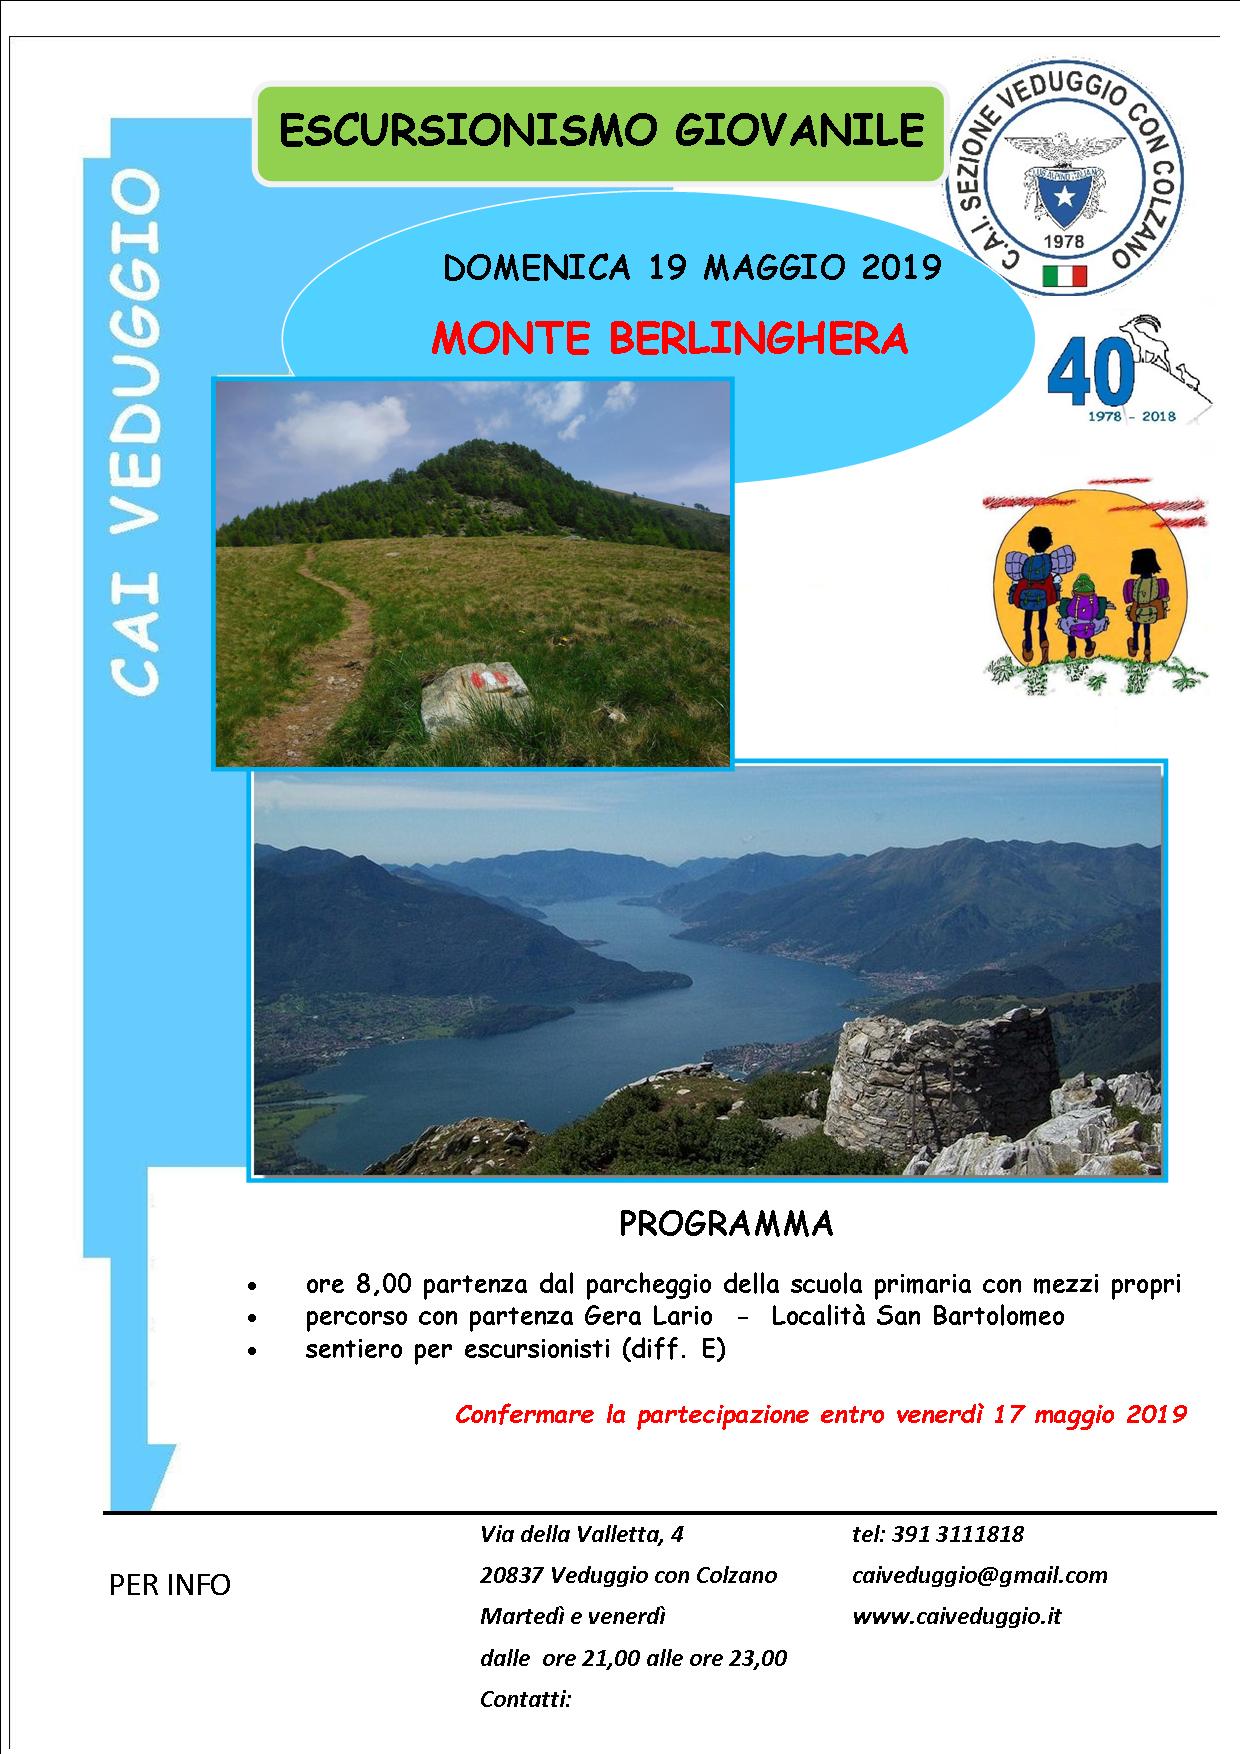 Domenica 19 maggio 2019 – Escursionismo giovanile – Monte Berlinghera (m.1930)